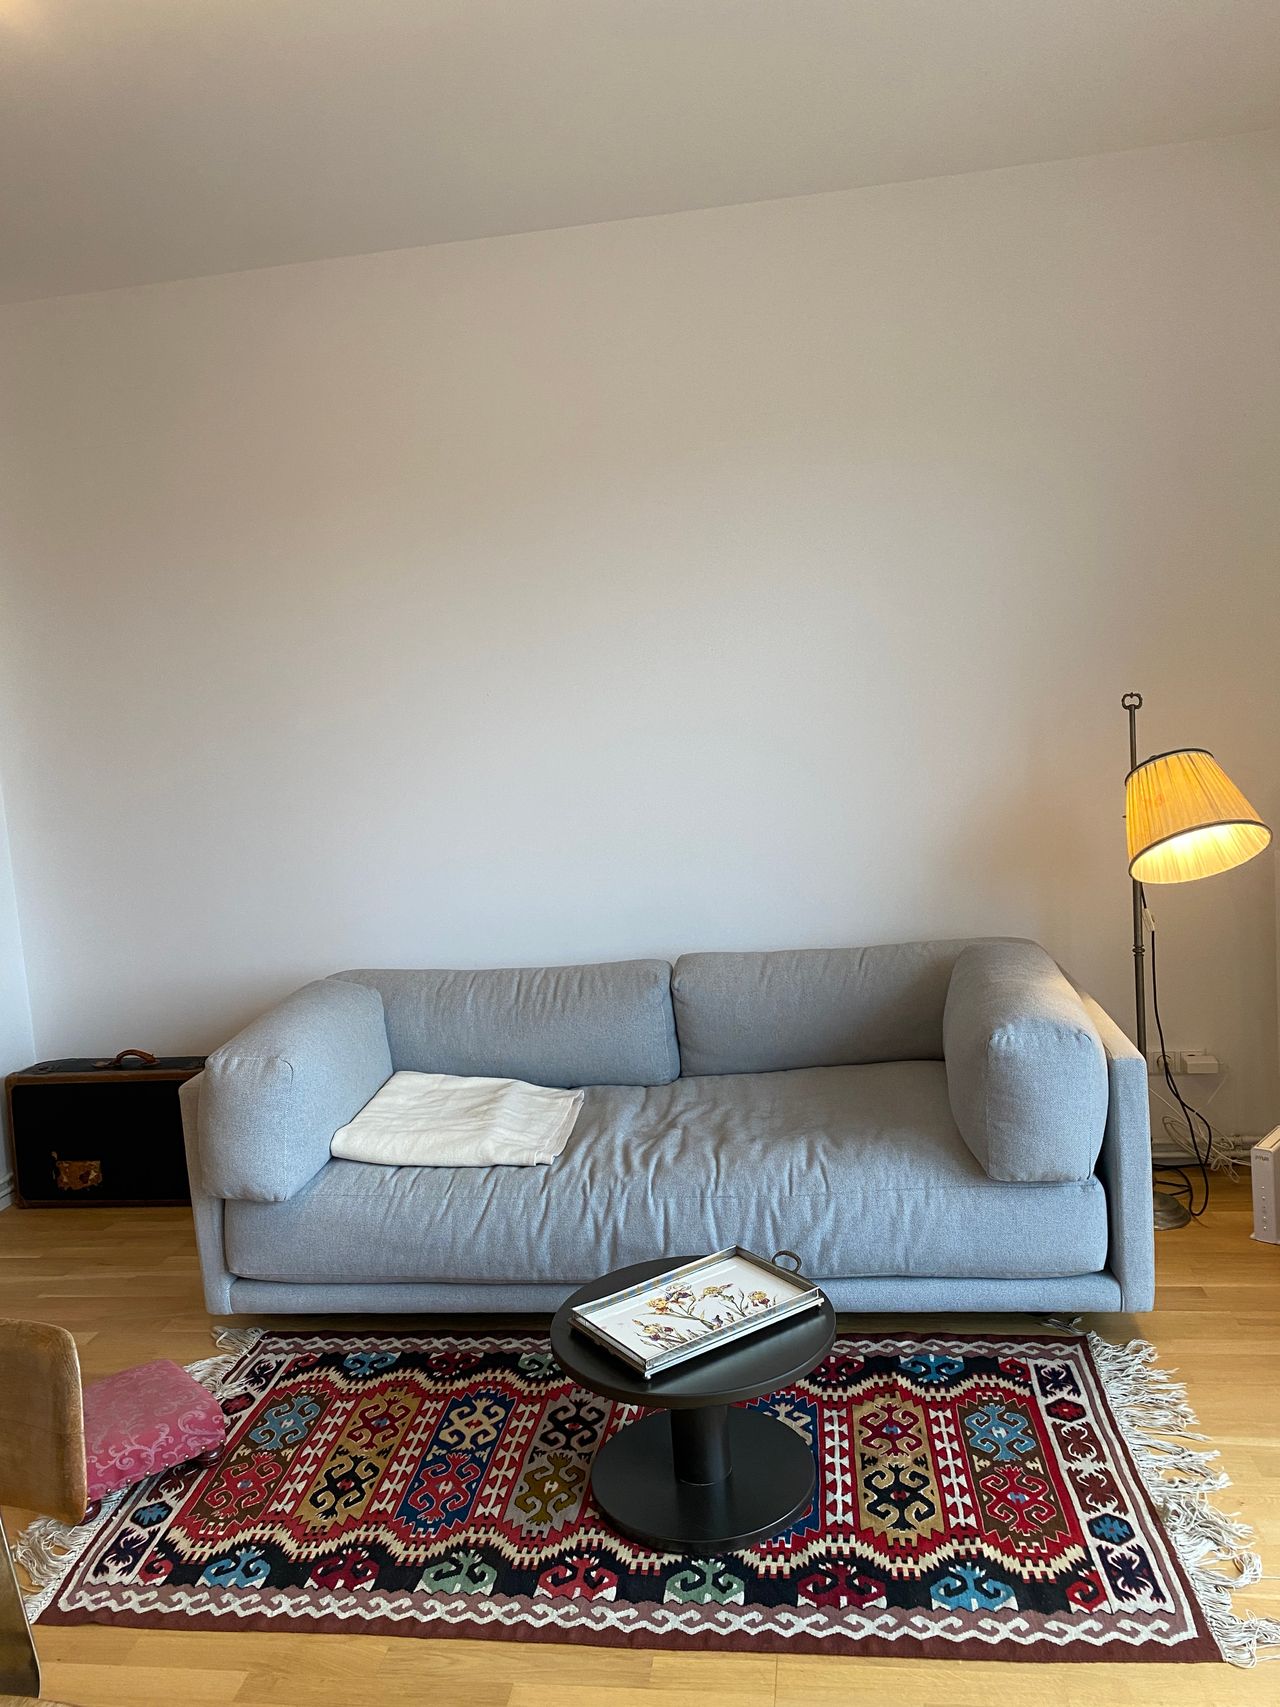 Lovely and sunny apartment in Kreuzberg (Berlin)